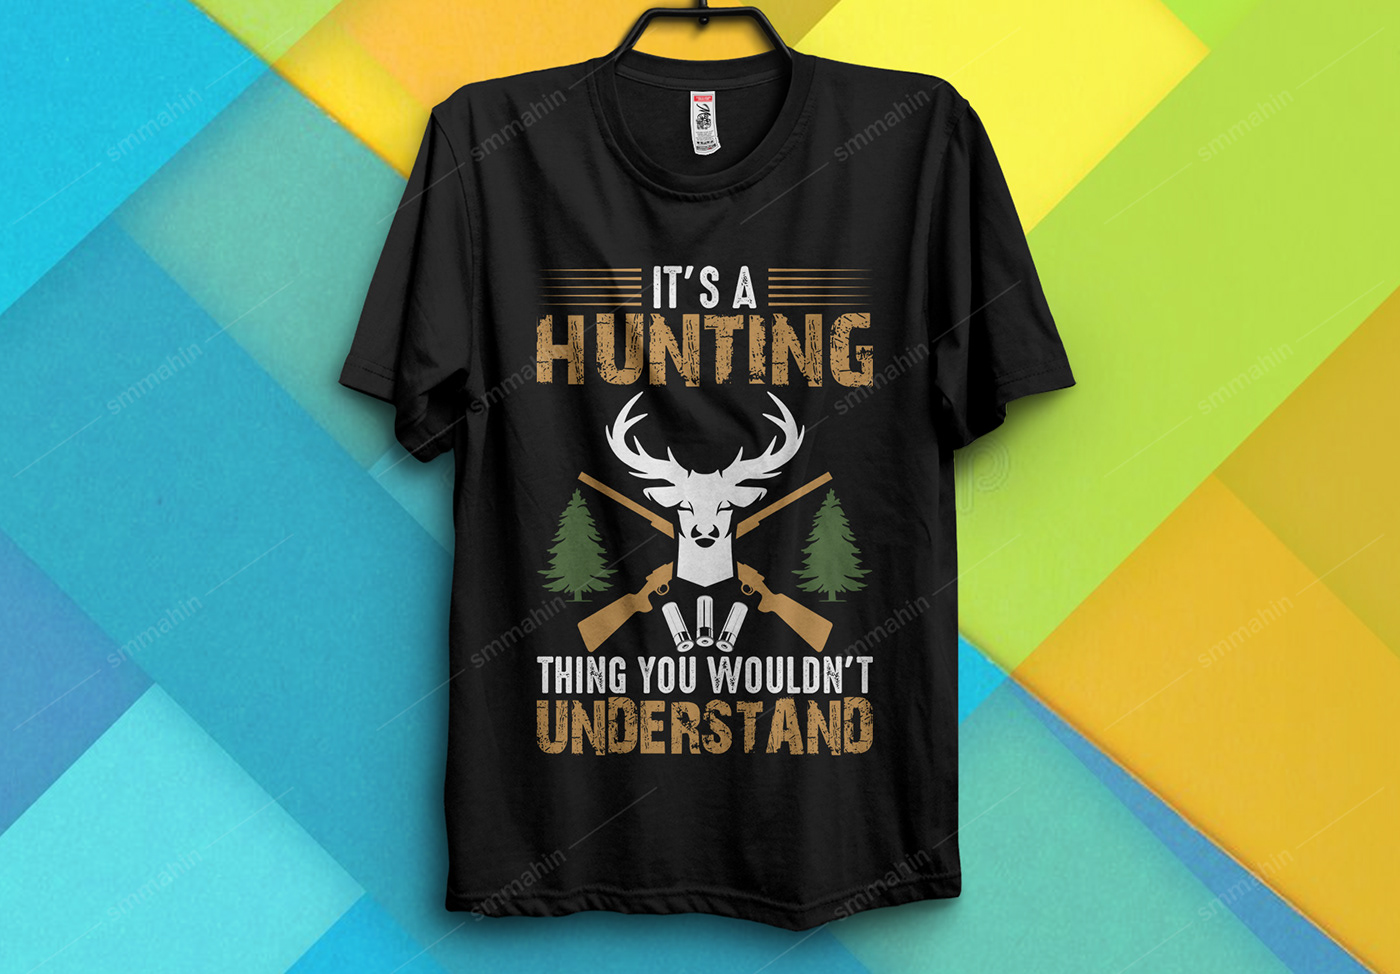 Hunting Hunting t shirt Hunting t shirt design illustrations T Shirt t shirt bunddle t shirt design tshirts typography   Typography T shirt Design